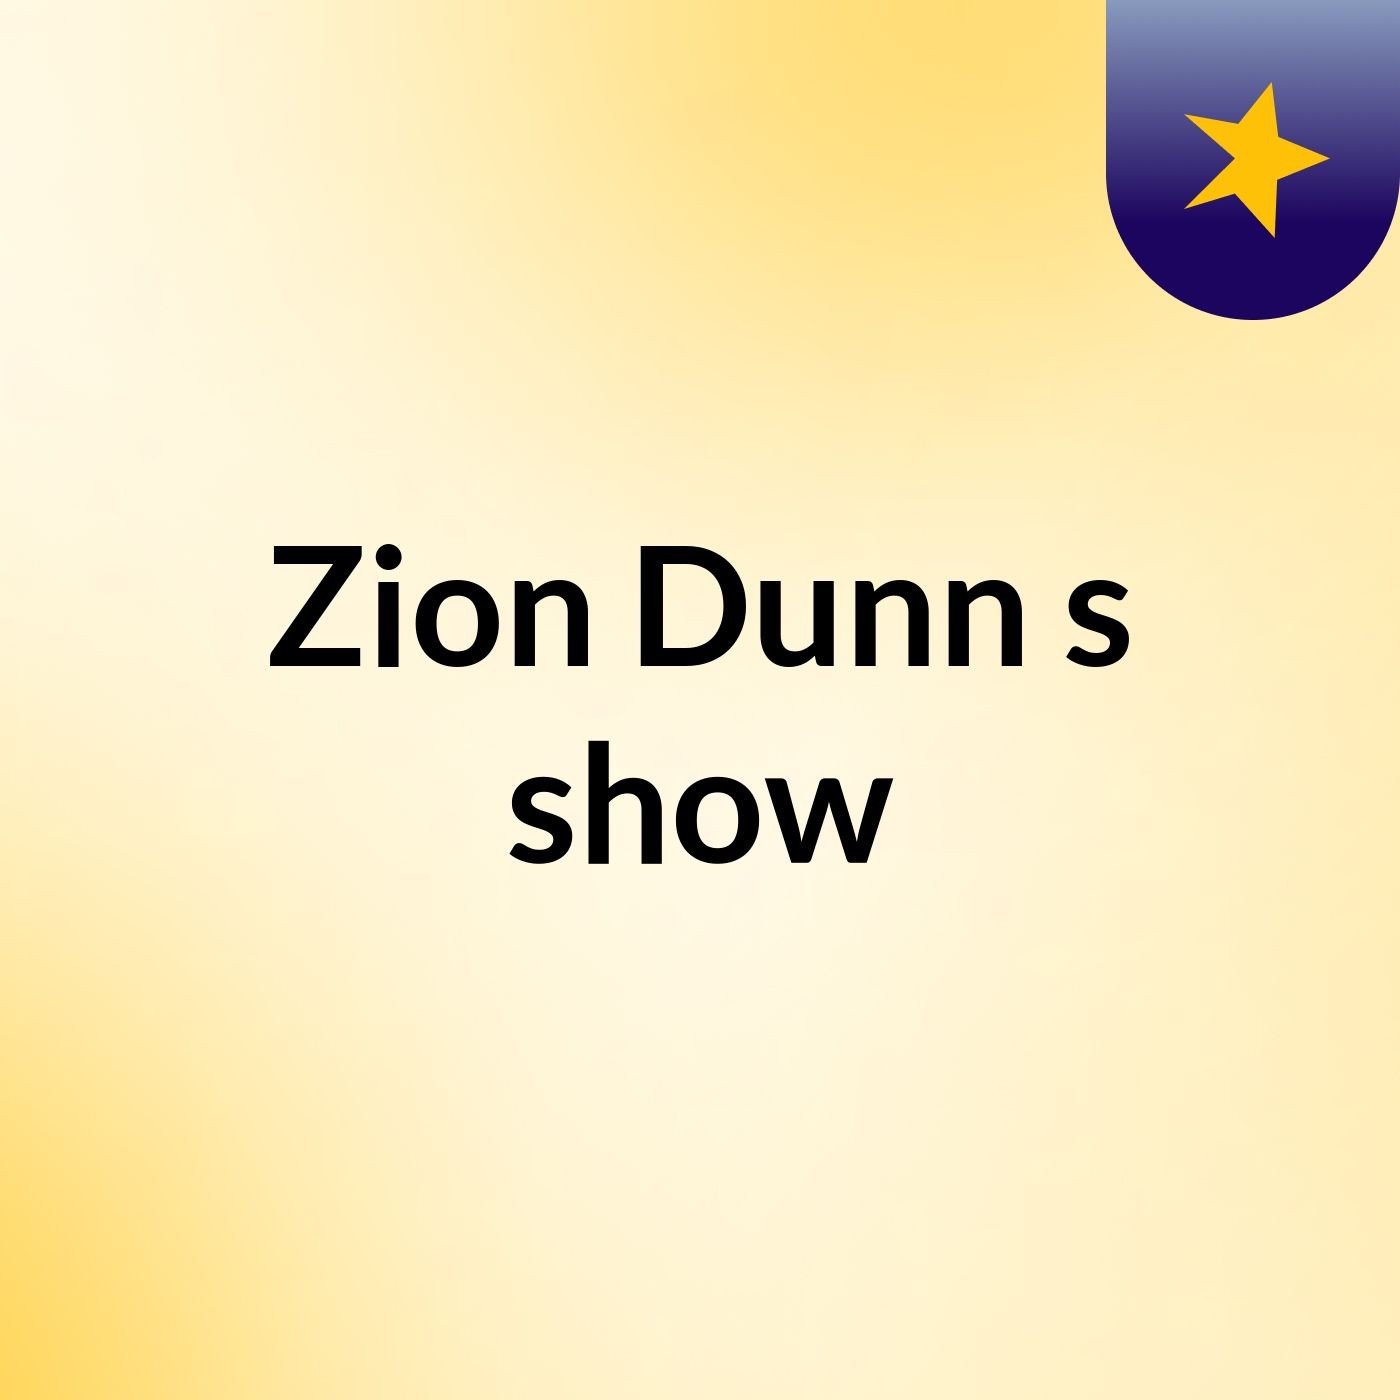 Zion Dunn's show